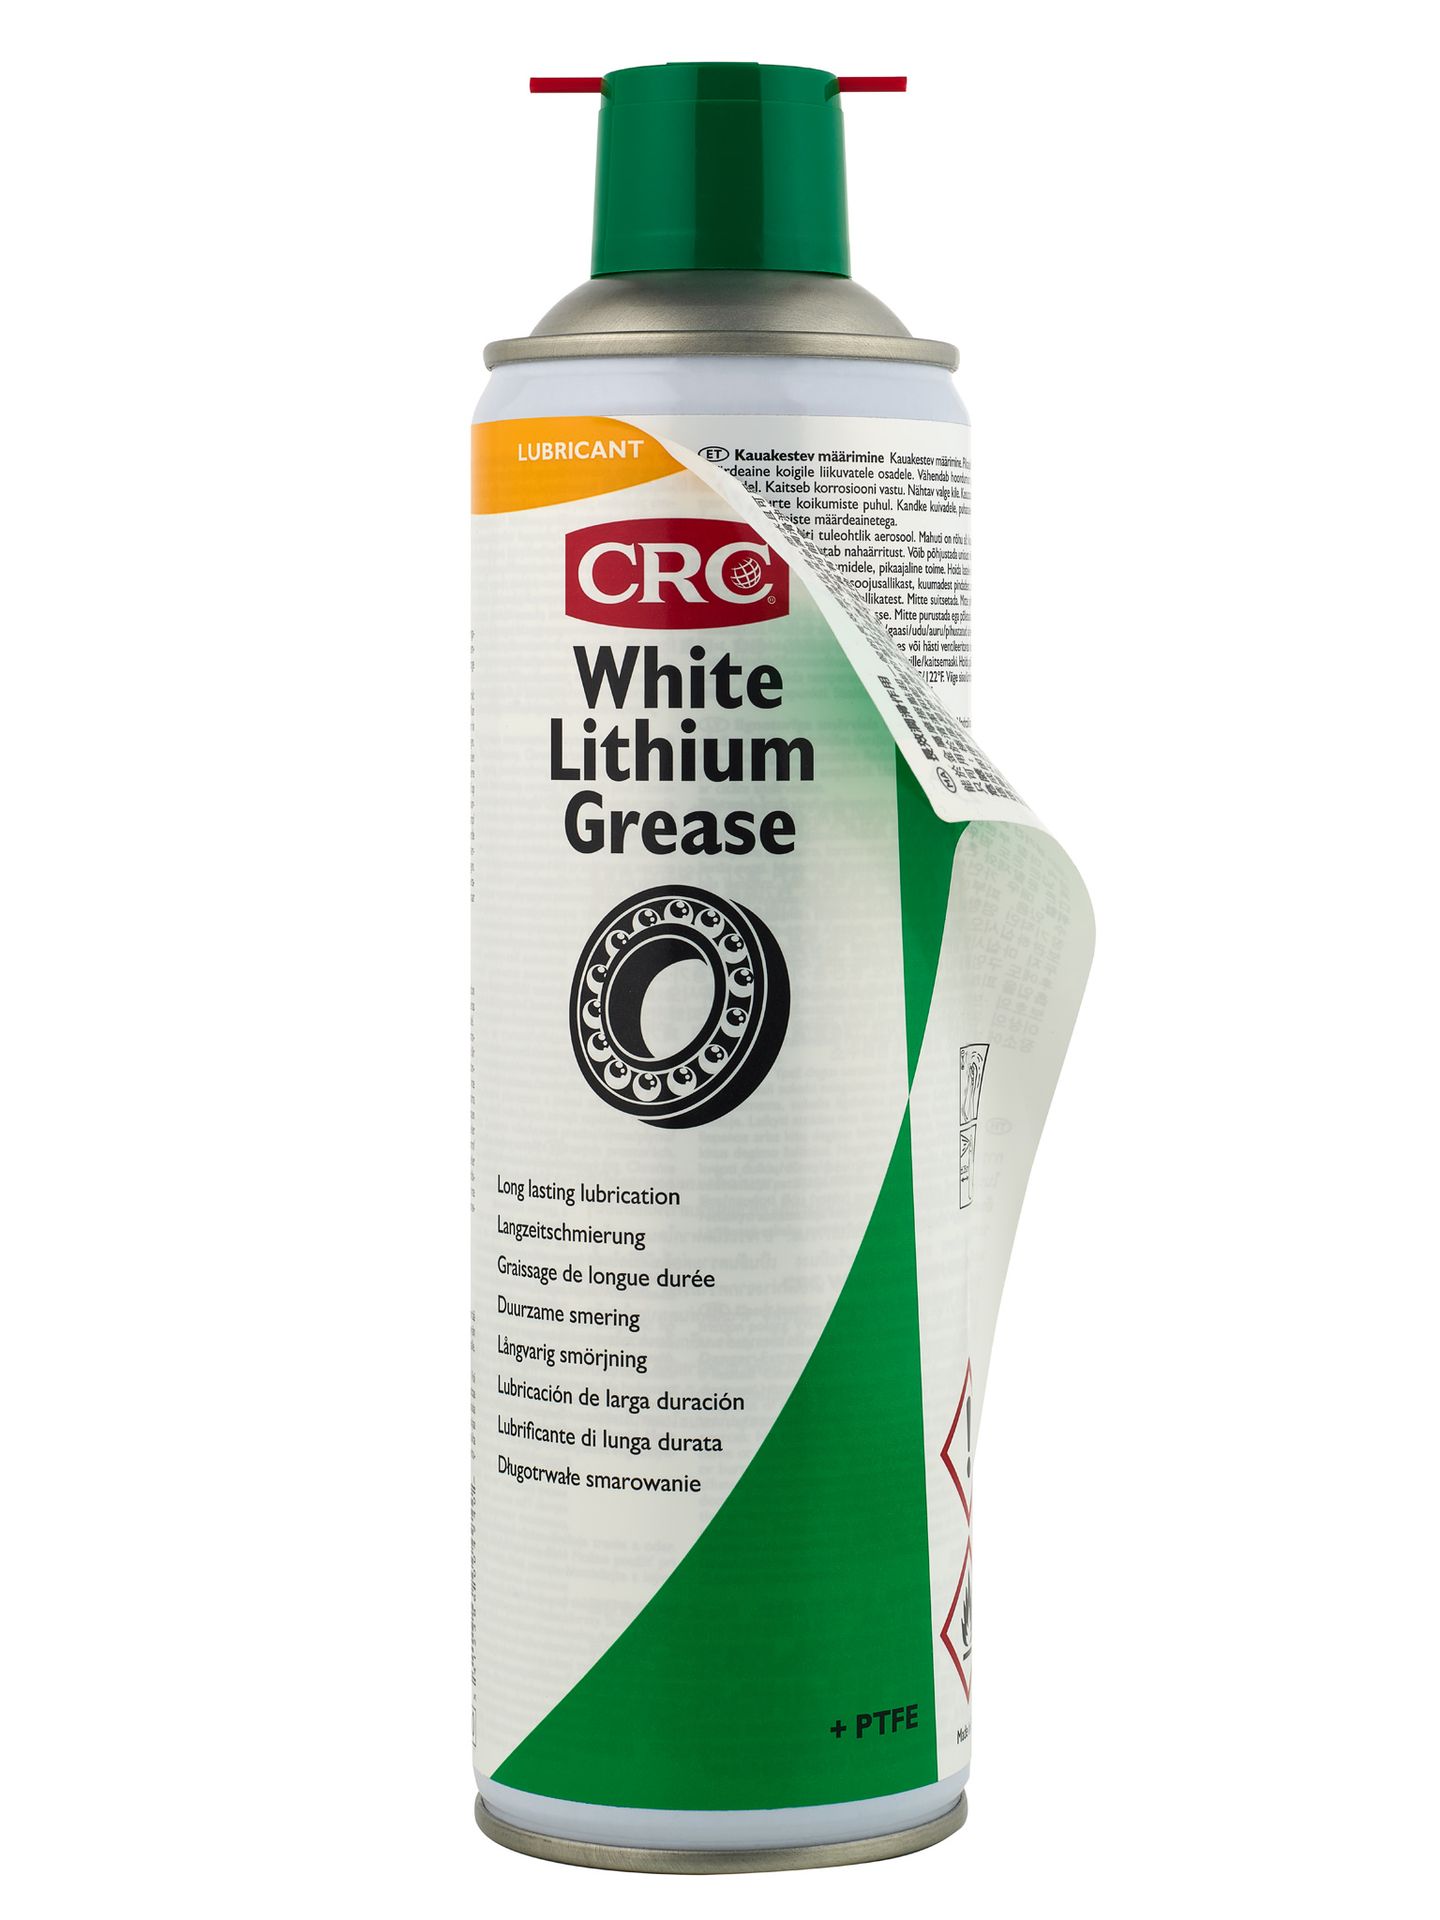 CRC white lithium grease packshot